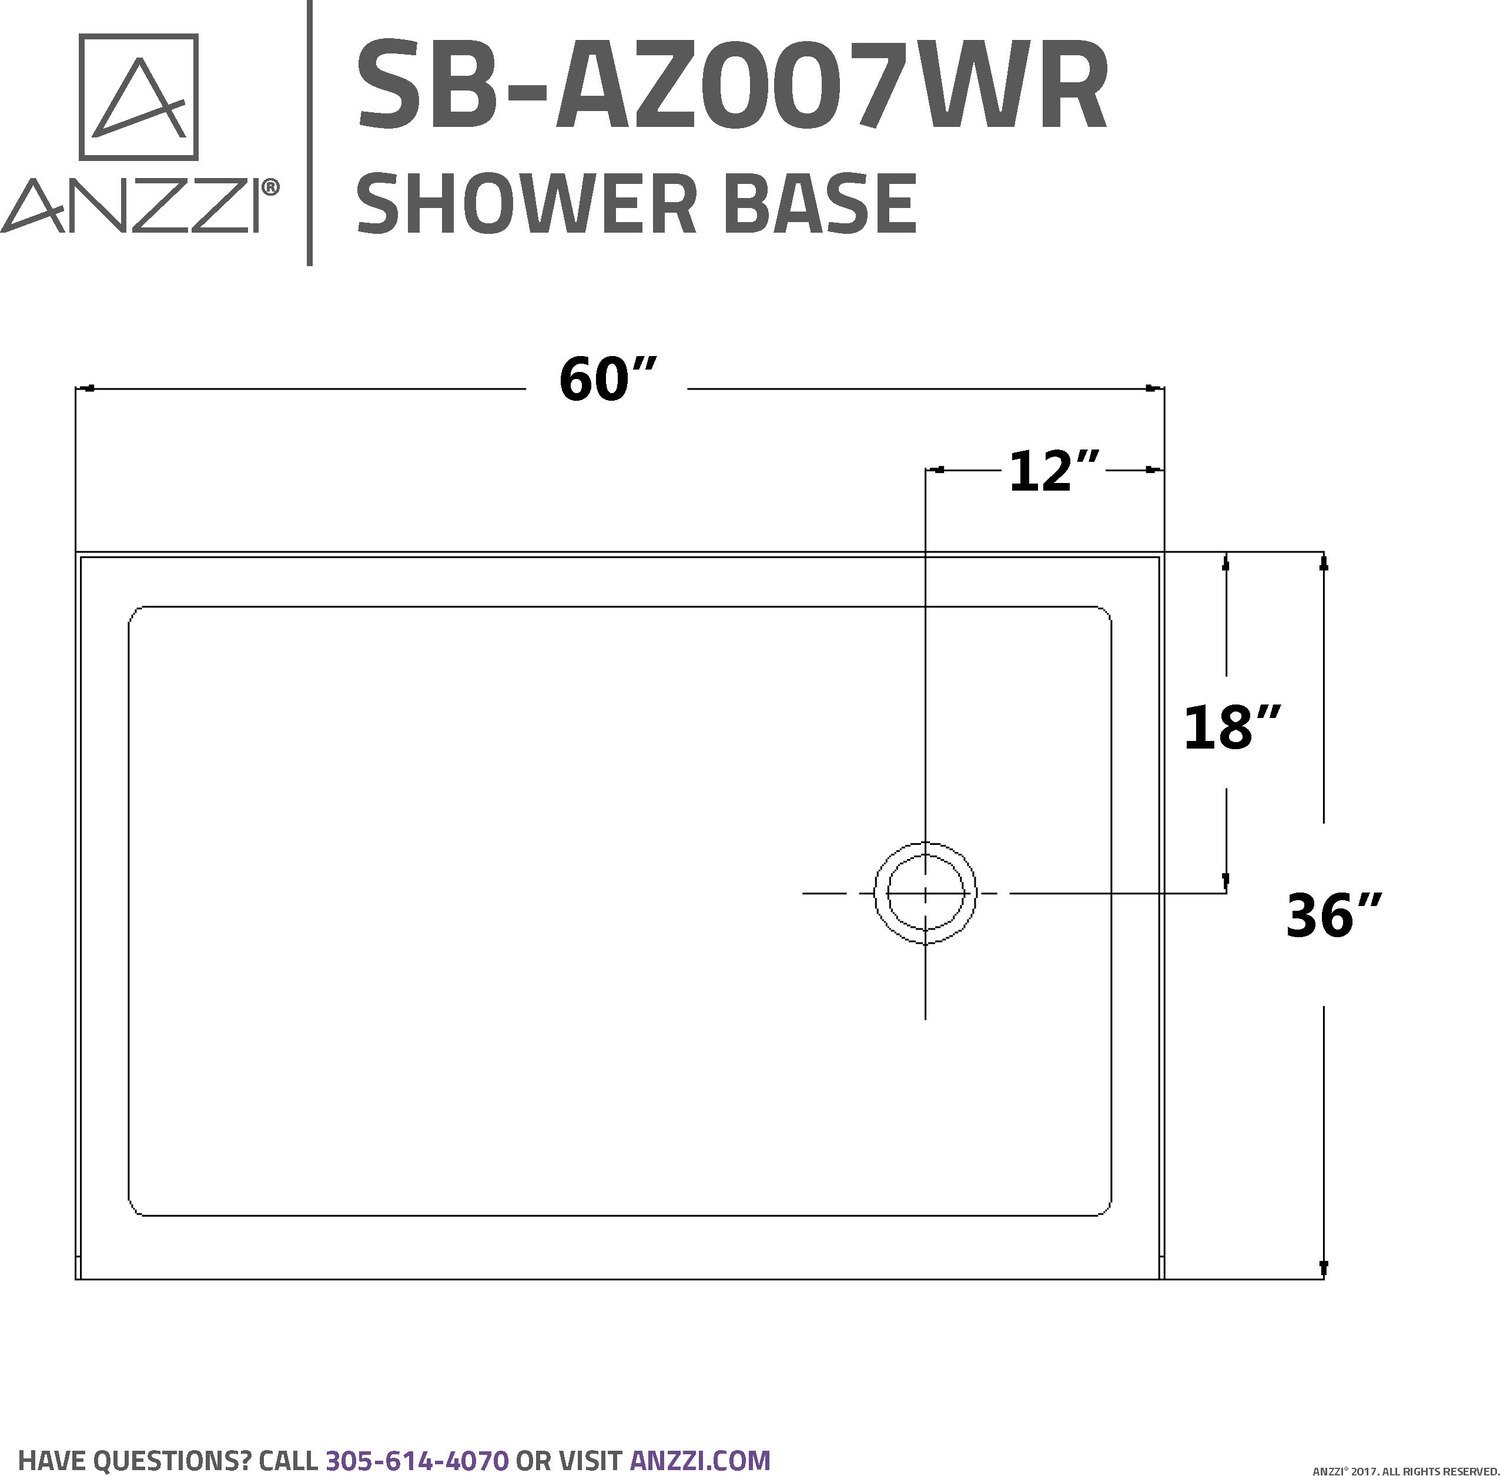  Anzzi SHOWER - Shower Bases - Single Threshold Shower Floor White